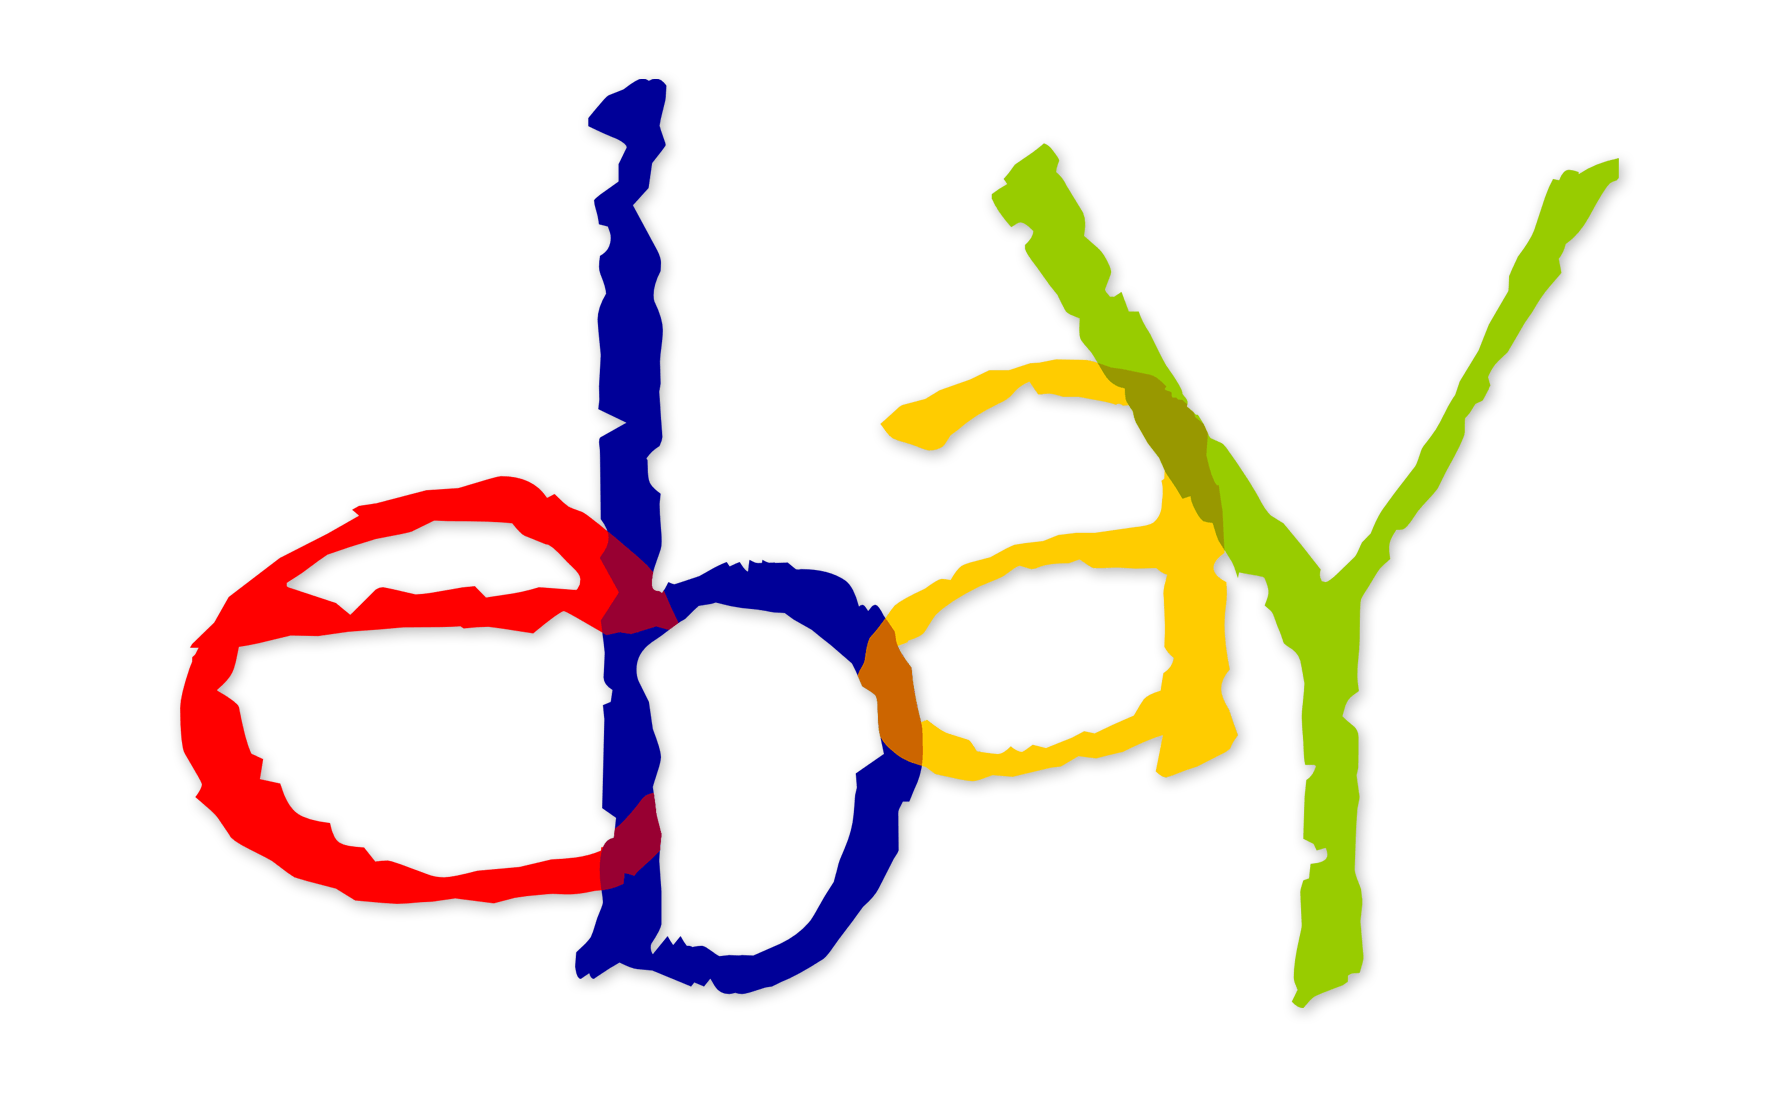 eBay Old Logo - Adventures on eBay